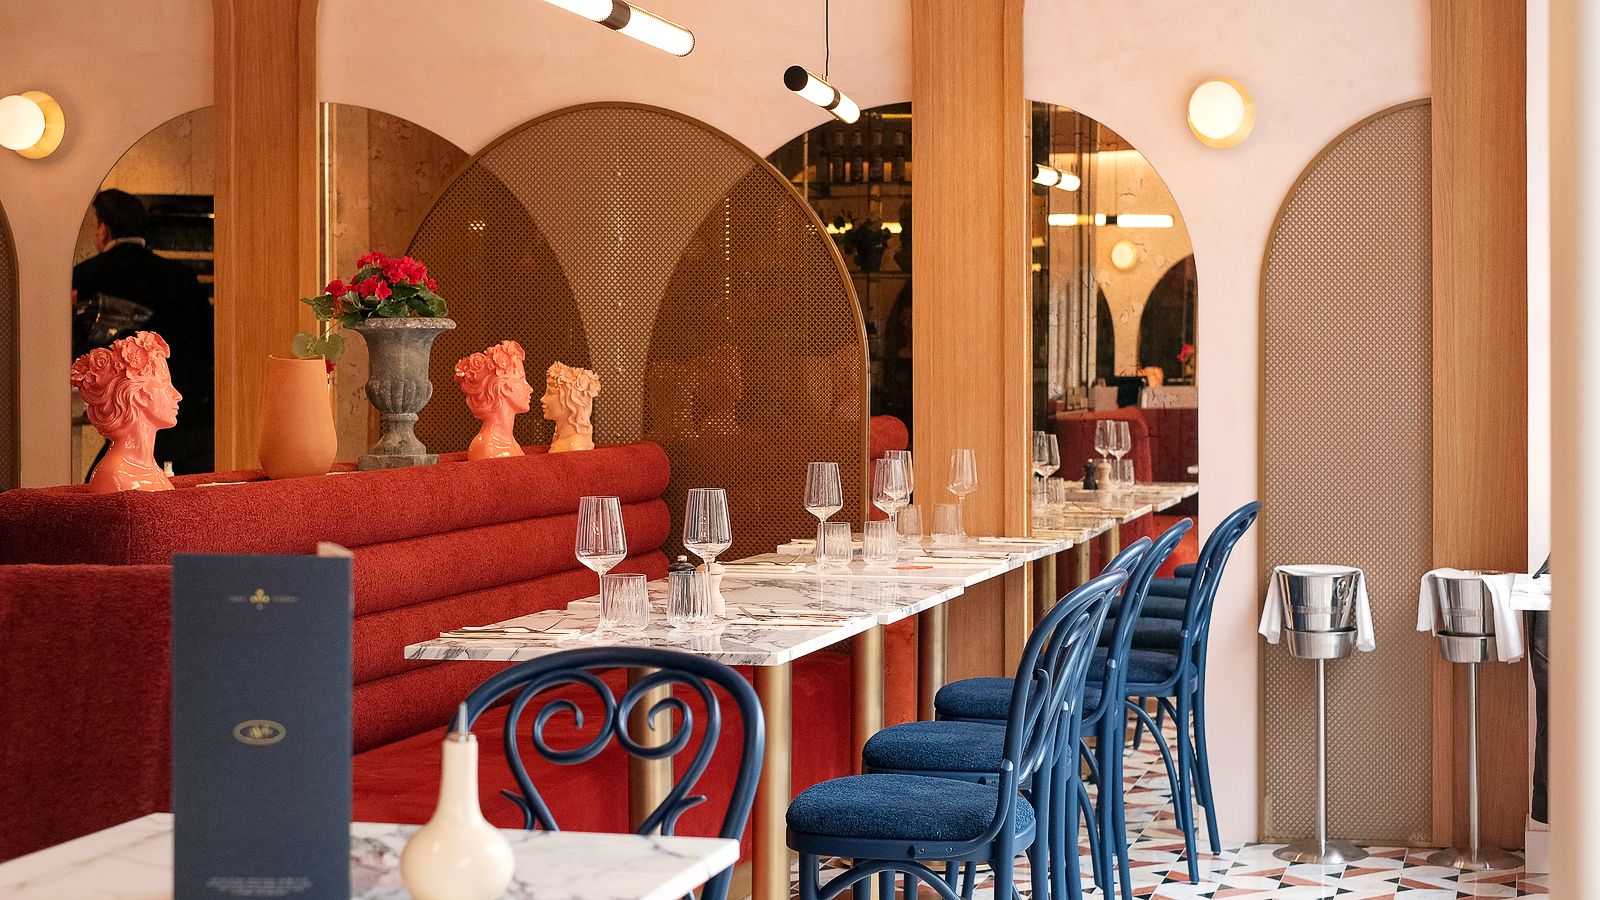 Ресторан Agata в Париже, фото 1